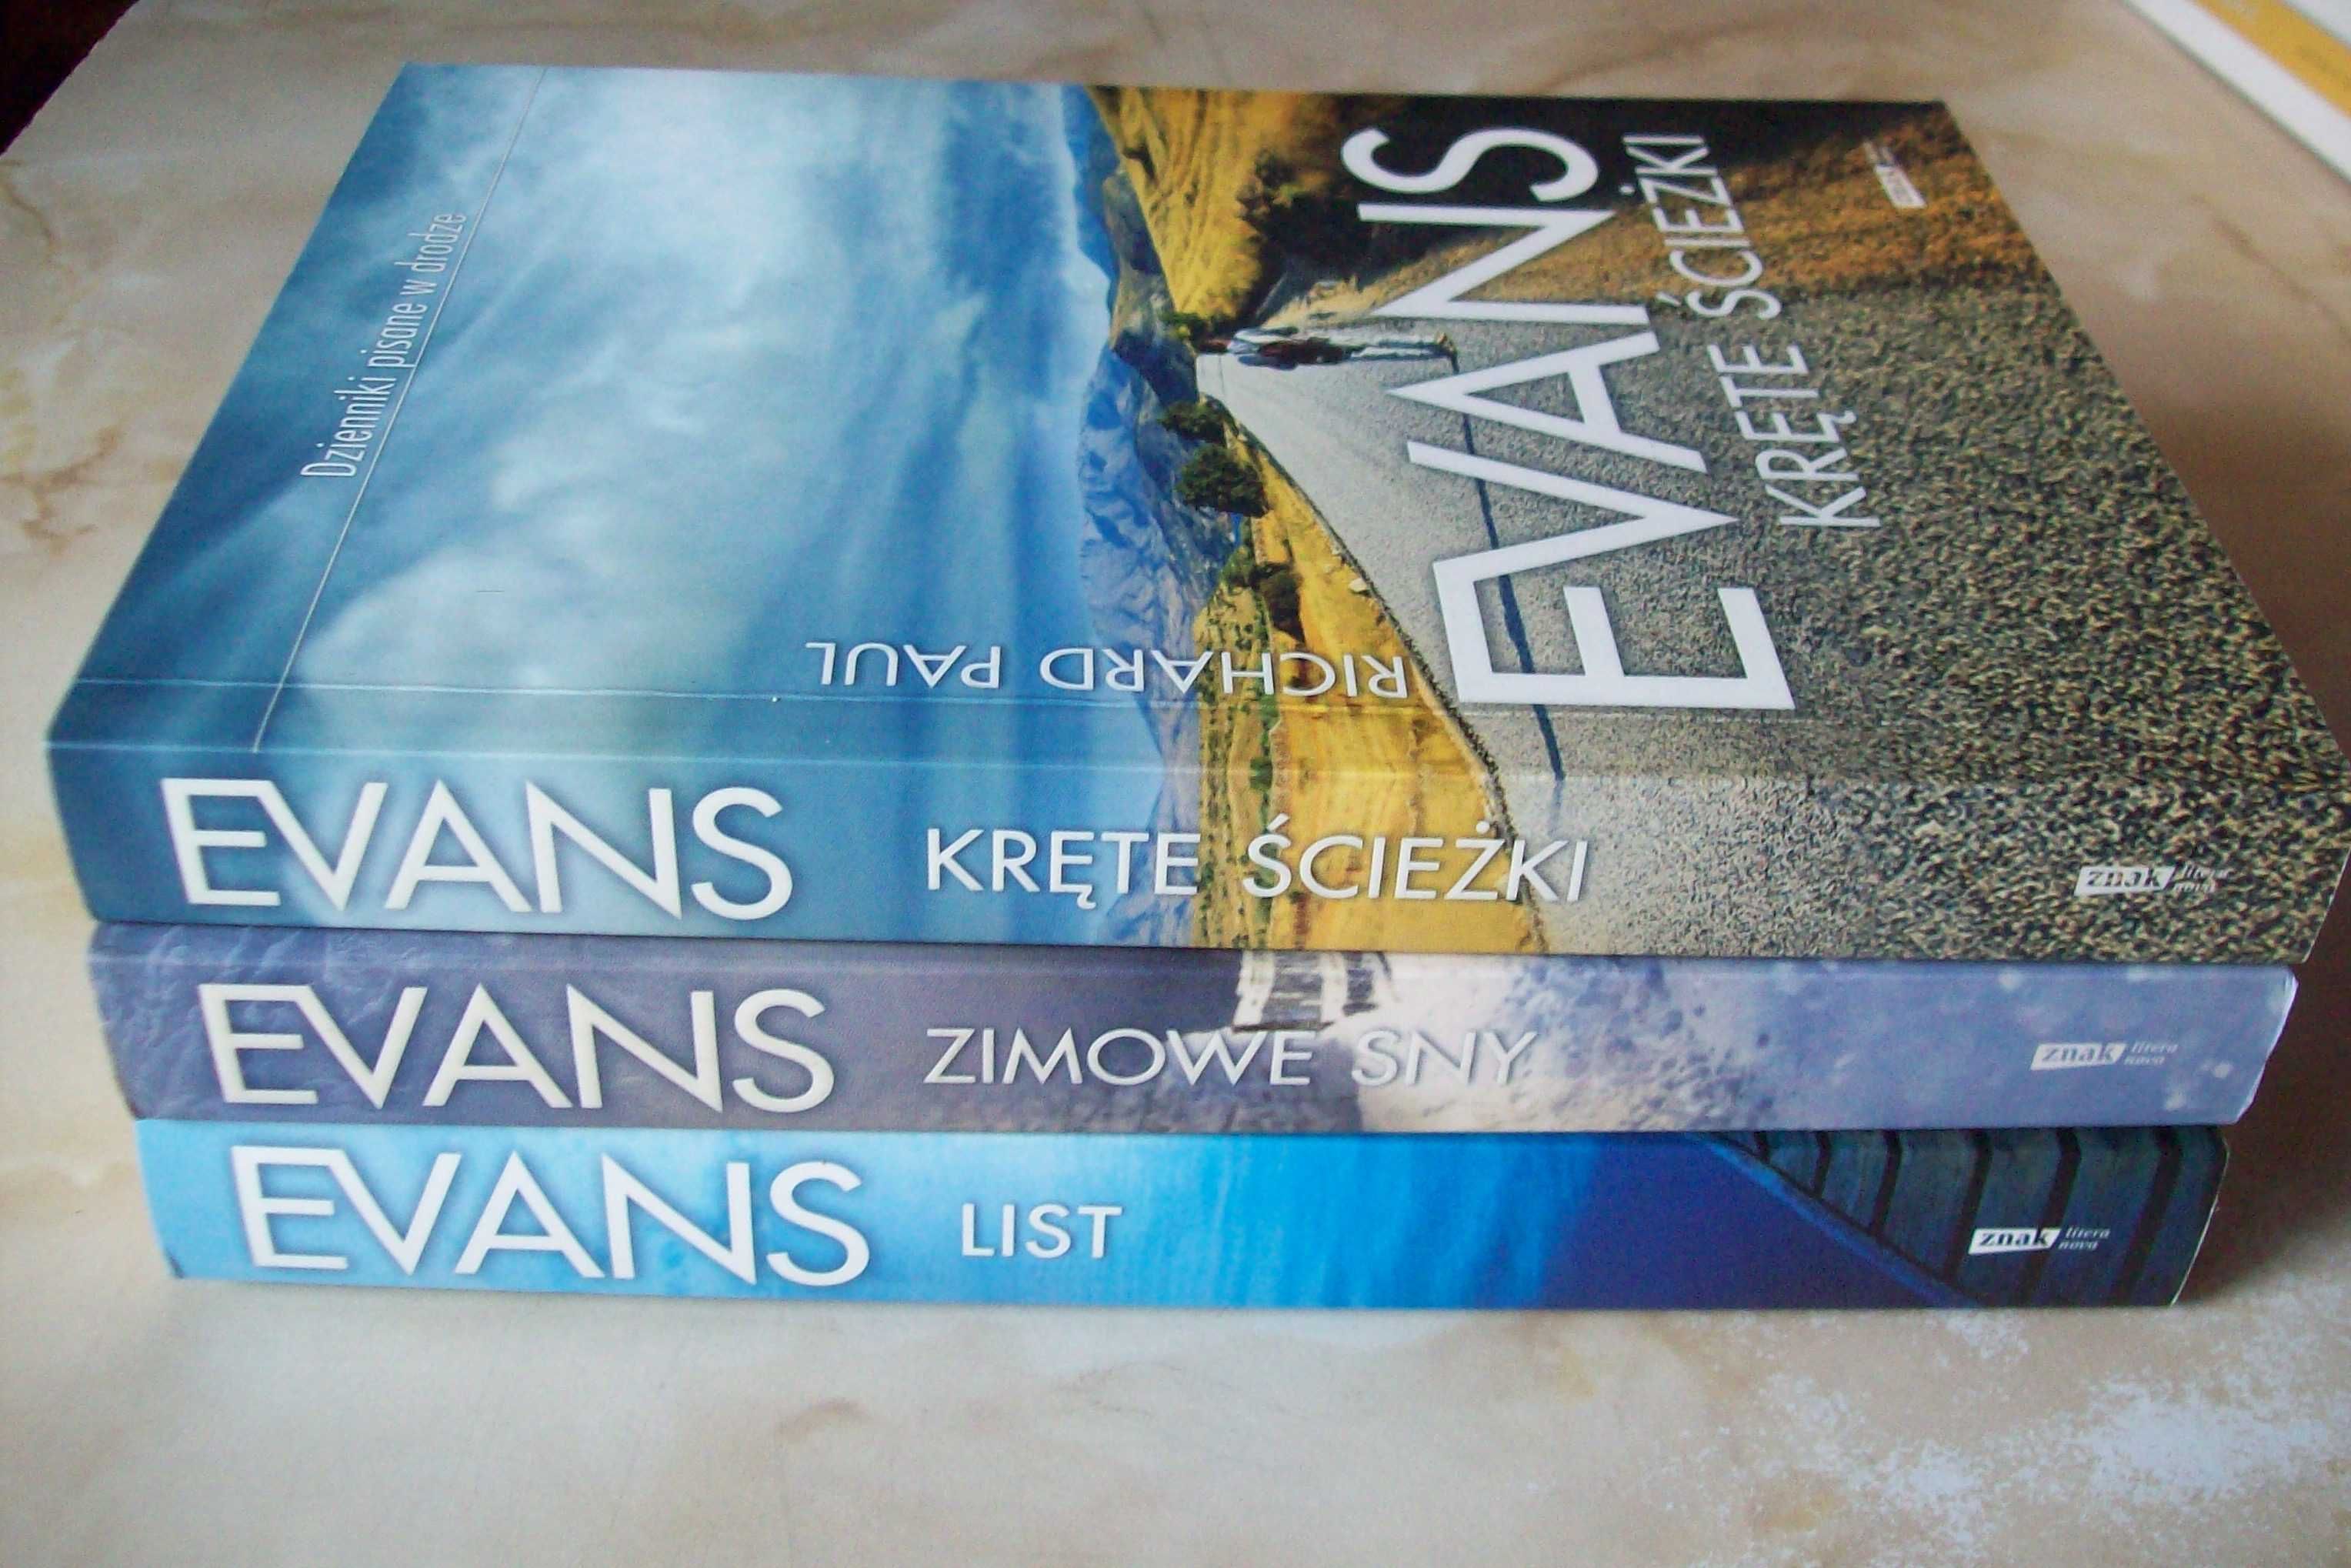 Kręte ścieżki + Zimowe sny + List Evans zestaw 3 książek